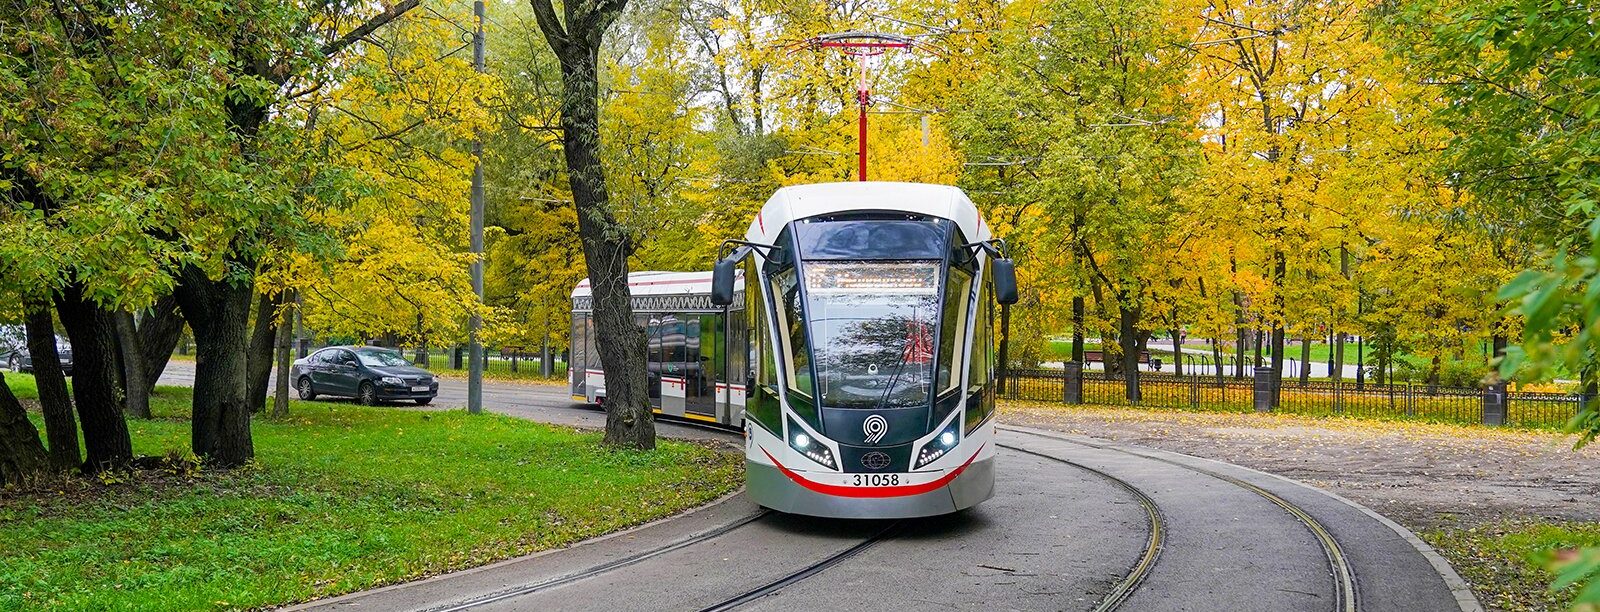 Стоит отметить, что Депо обсуживает 135 современных низкопольных вагонов «Витязь-Москва». Фото: сайт мэра Москвы